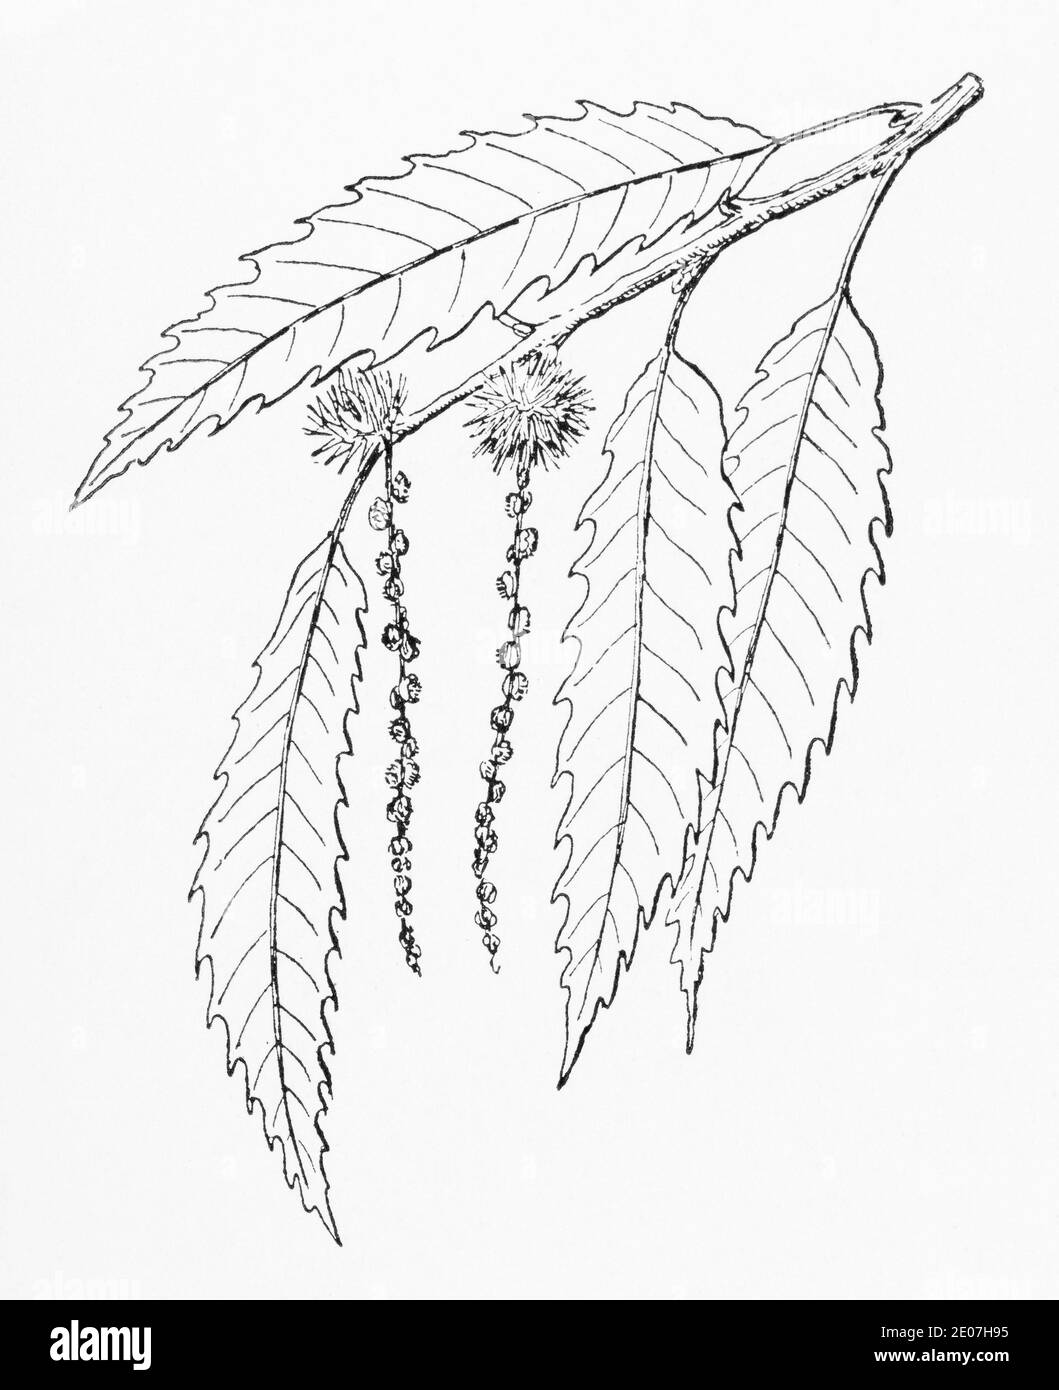 Alte botanische Illustration Gravur von Sweet Chestnut / Castanea sativa. Siehe Hinweise Stockfoto